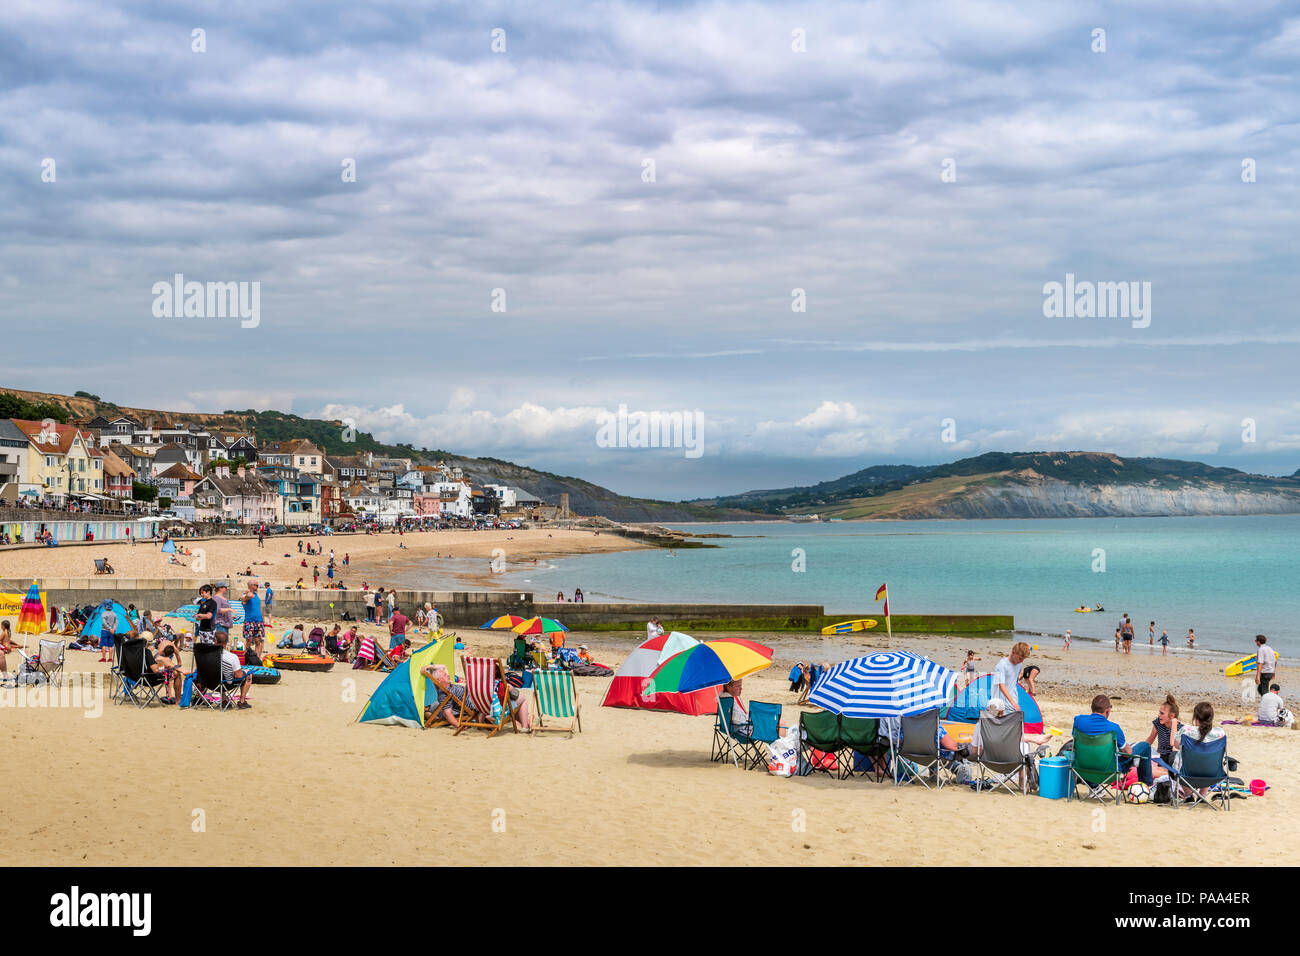 UK - Comme le beau temps persiste dans le sud-ouest de l'Angleterre, les vacanciers bénéficient d'une journée chaude sur la plage à Lyme Regis dans le Dorset. Banque D'Images